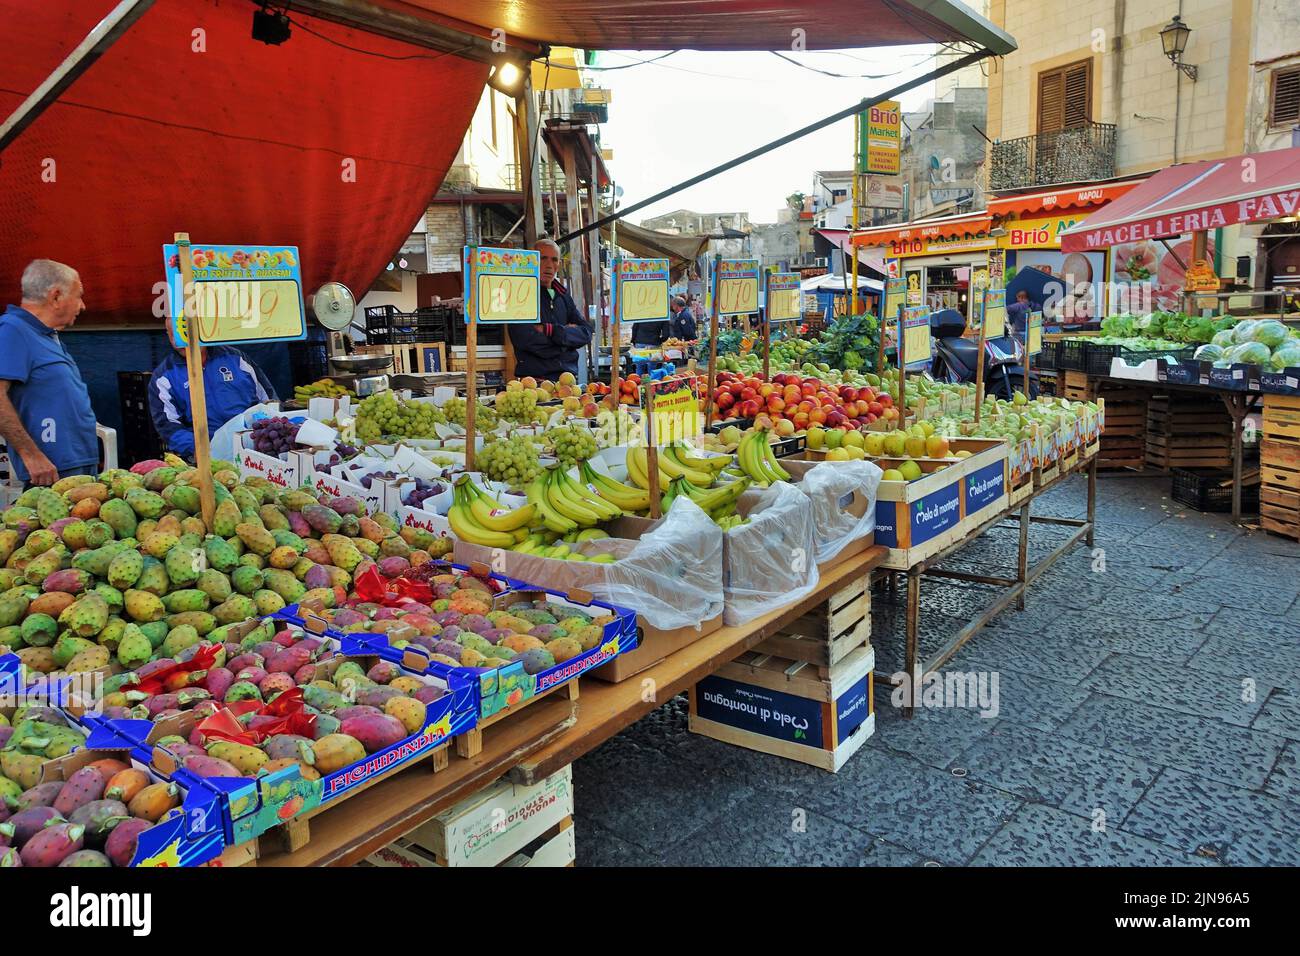 Mercato della frutta, Brio bar, macelleria, Palermo, Sicilia, Italia, Europa Foto Stock